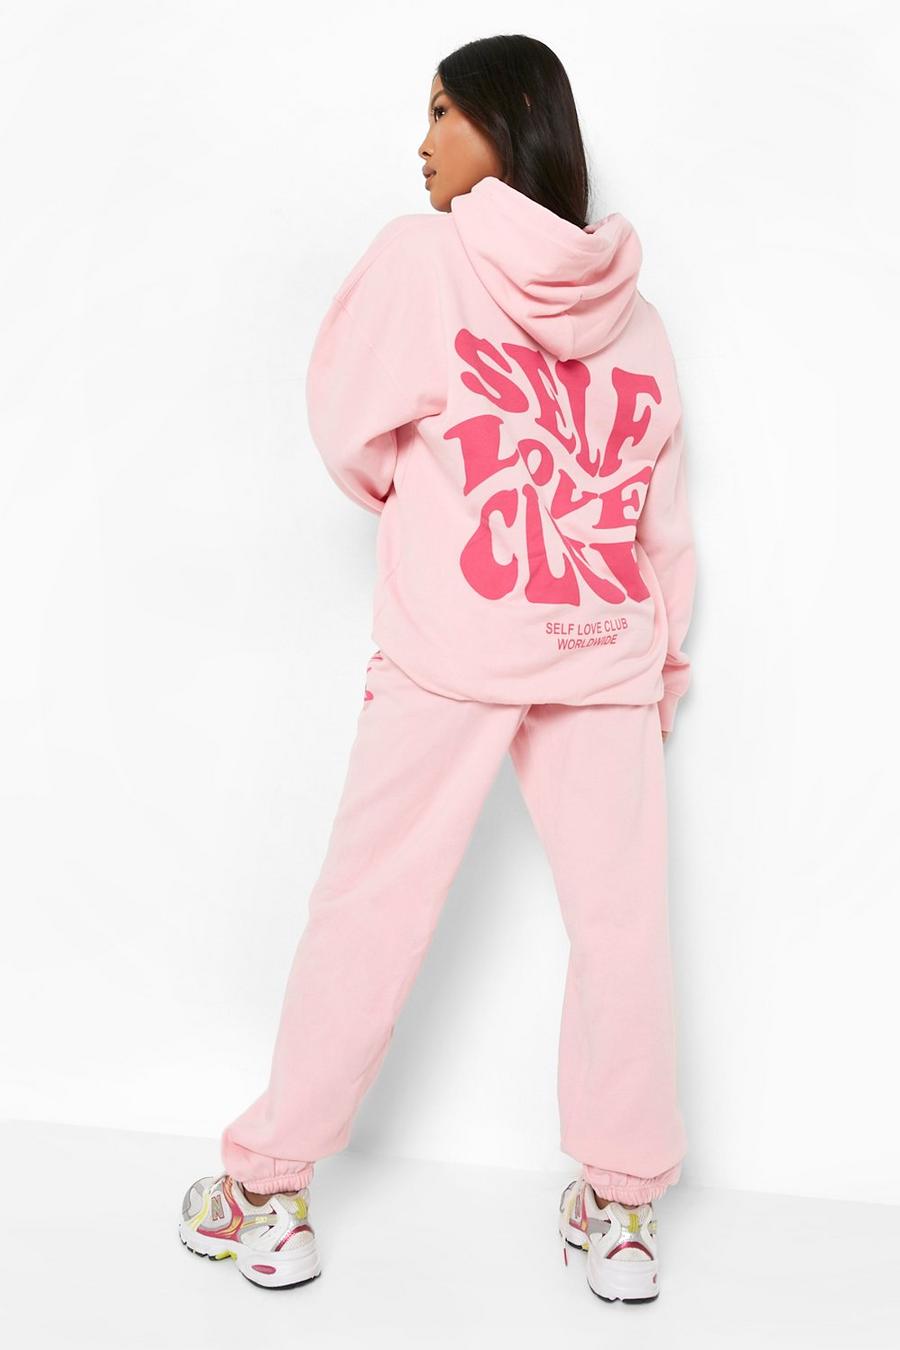 Petite Trainingsanzug mit Self Love Club Print, Light pink rose image number 1